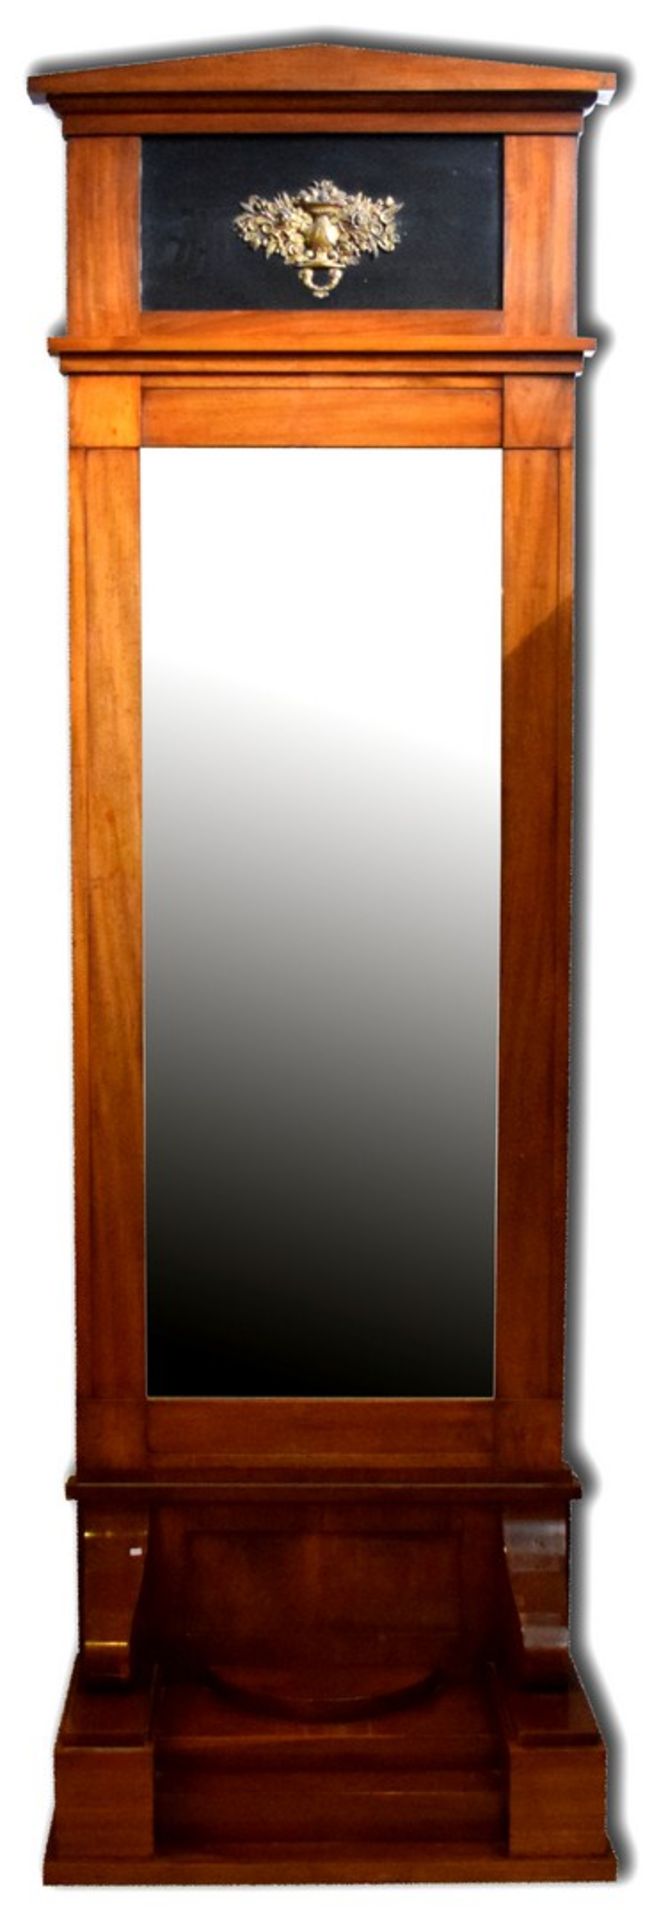 Konsole mit SpiegelMahagoni, breite, treppenförmig ansteigende Konsole, Spiegel mit Schinkeldach,